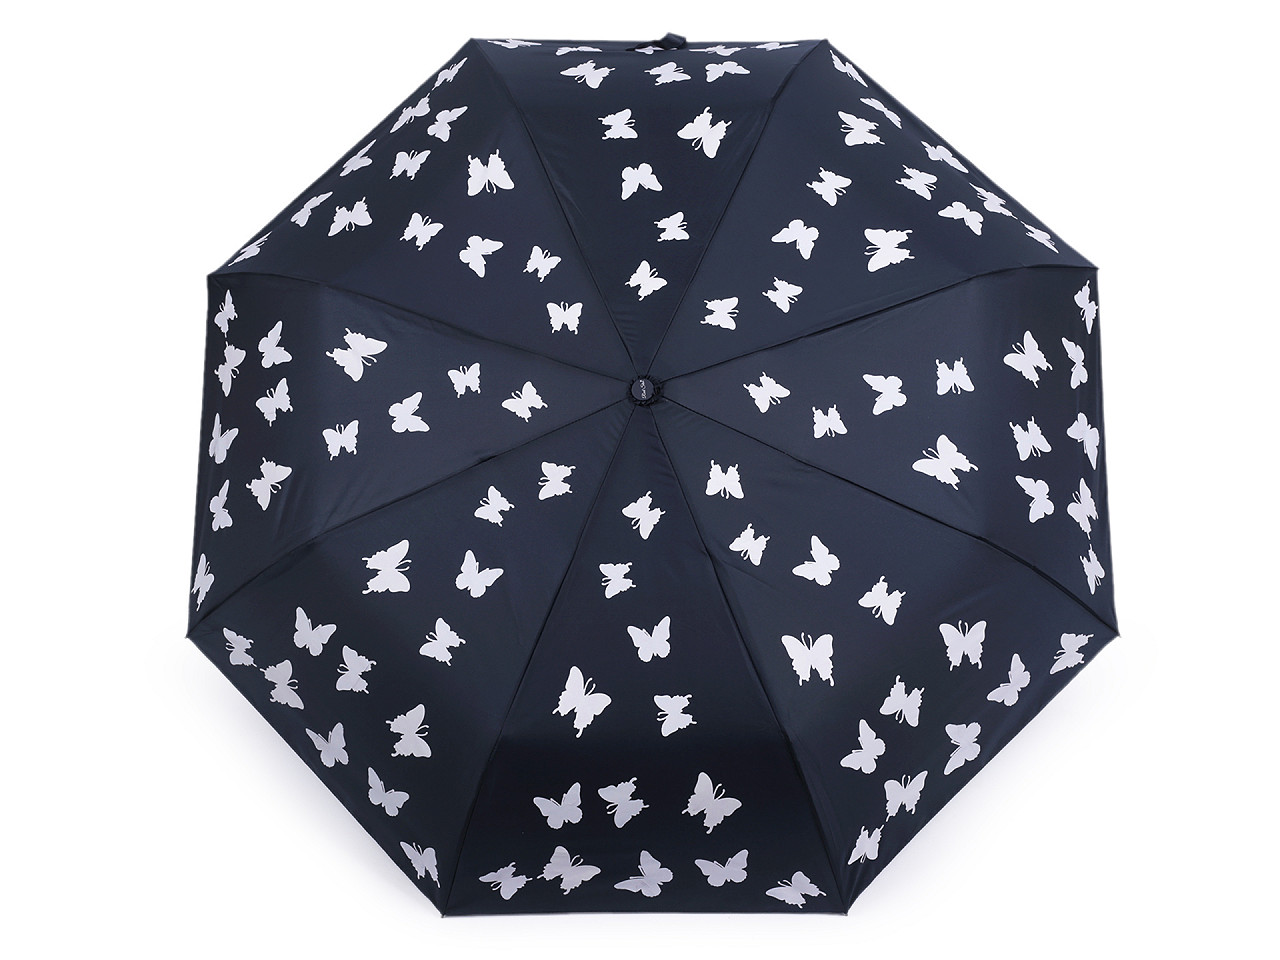 Magischer Damen-Faltregenschirm Schmetterling, dunkelblaugrau, 1 Stück